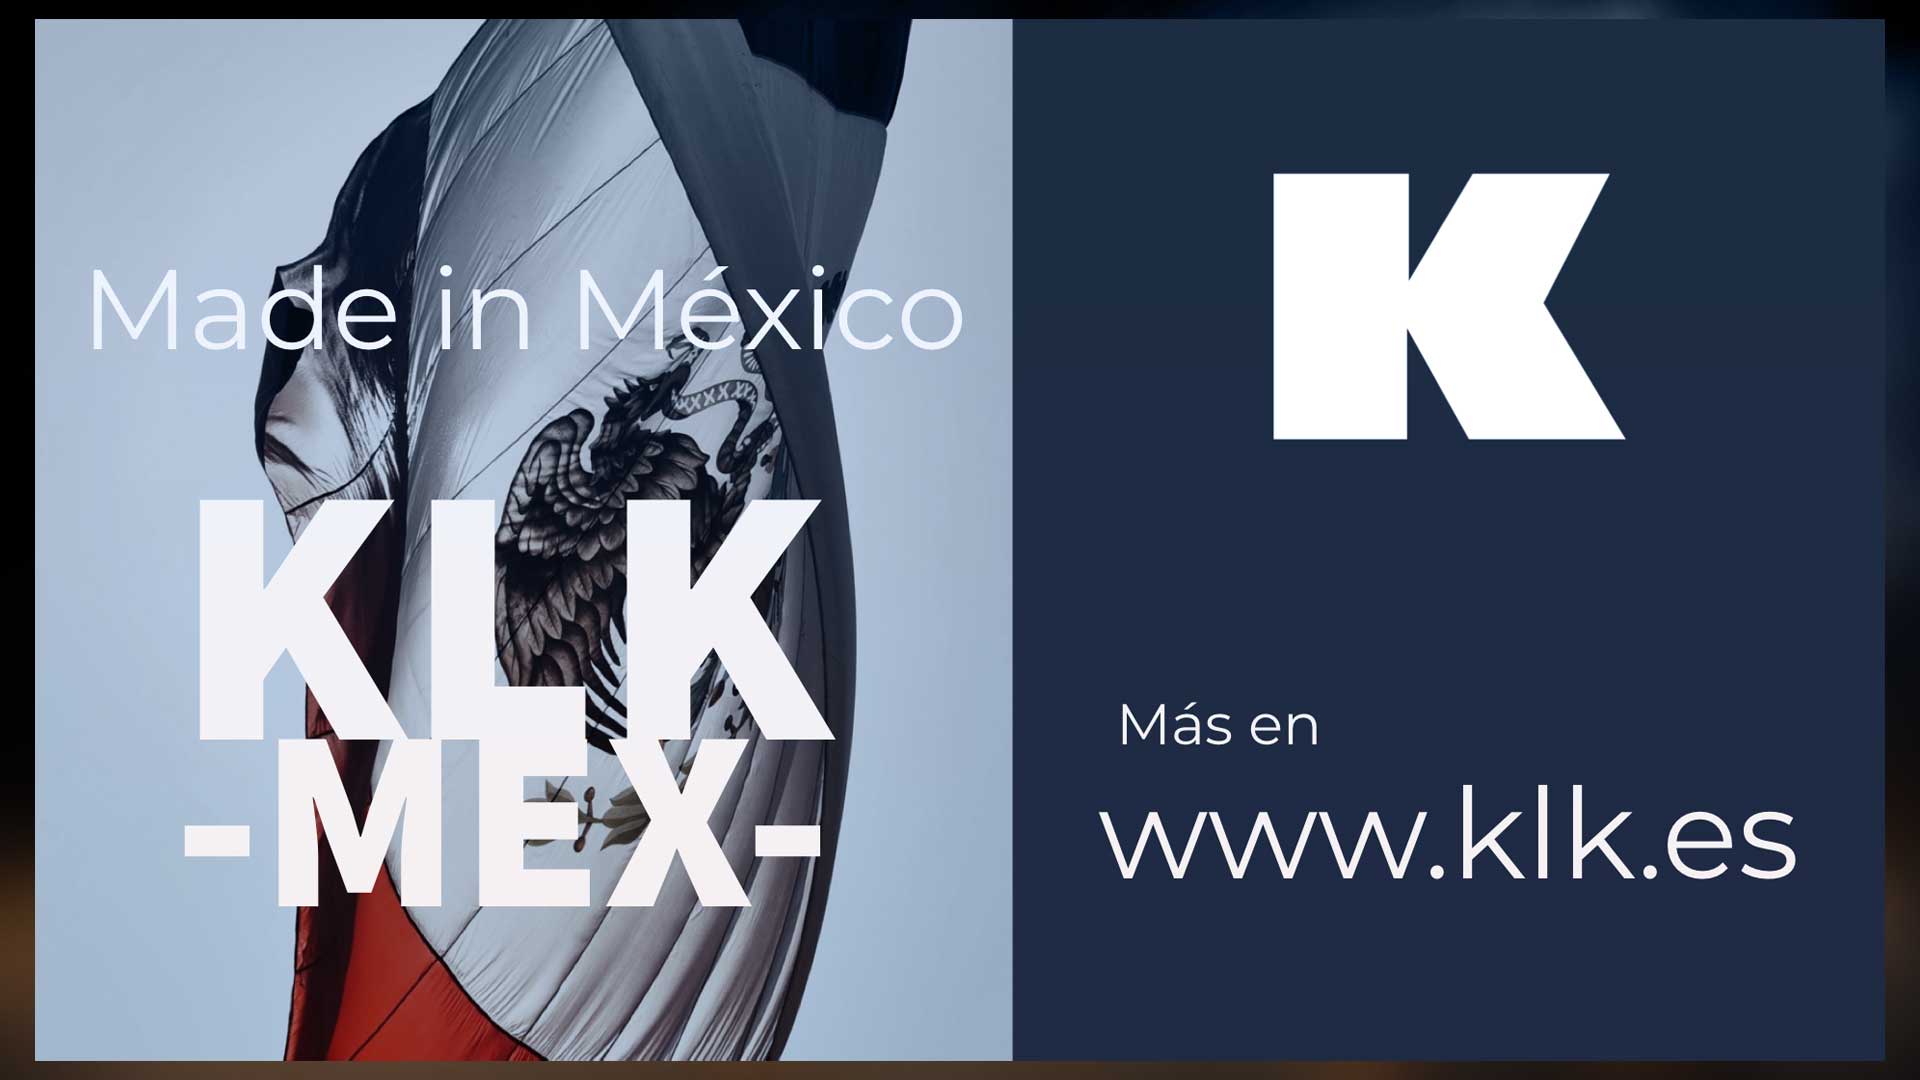 fabricación en mexico | klk